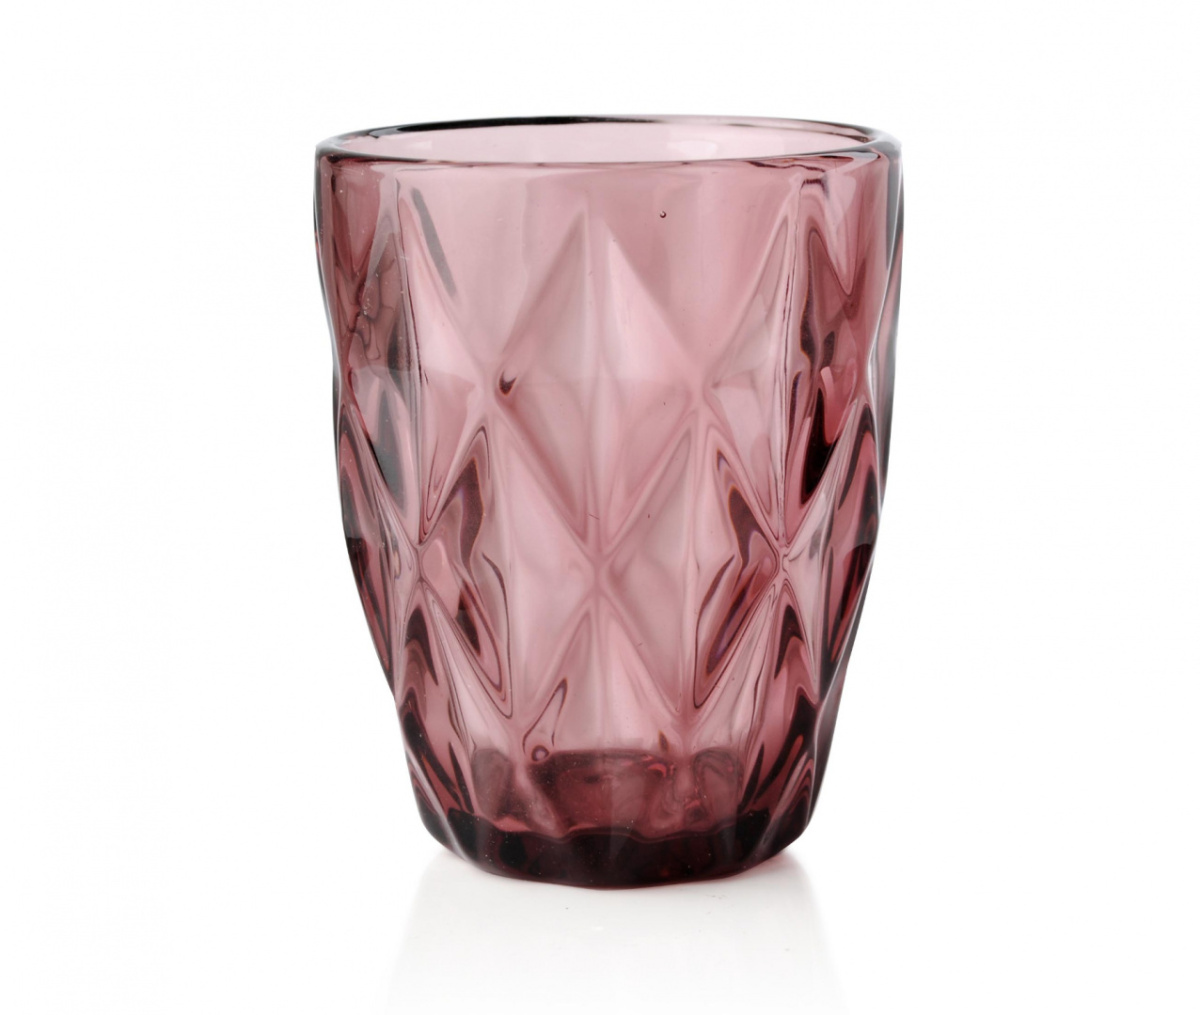 Zestaw 6 szklanek Elise Pink różowe do wody na prezent